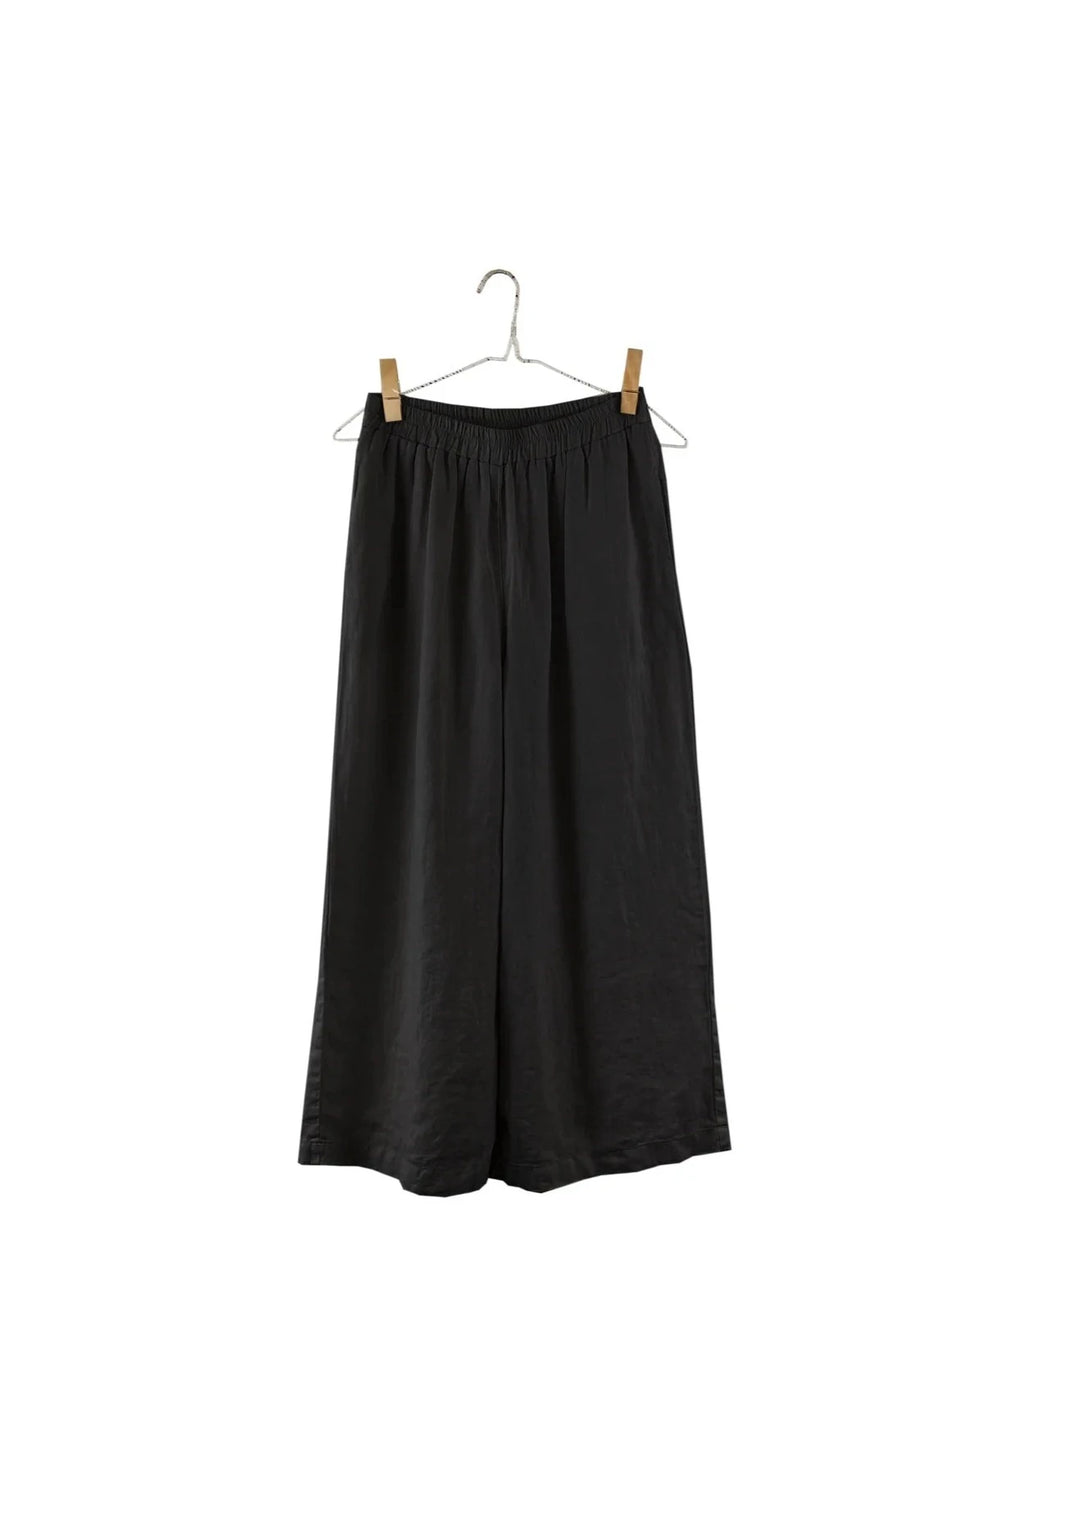 Wide Linen Pants - Black